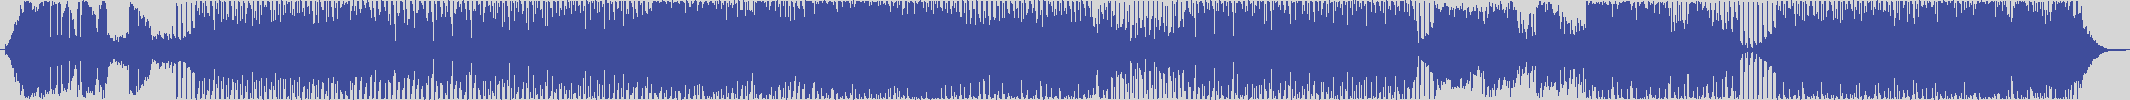 definitiva [DEF011] De - Javu - Never [Piparo's Main Single] audio wave form